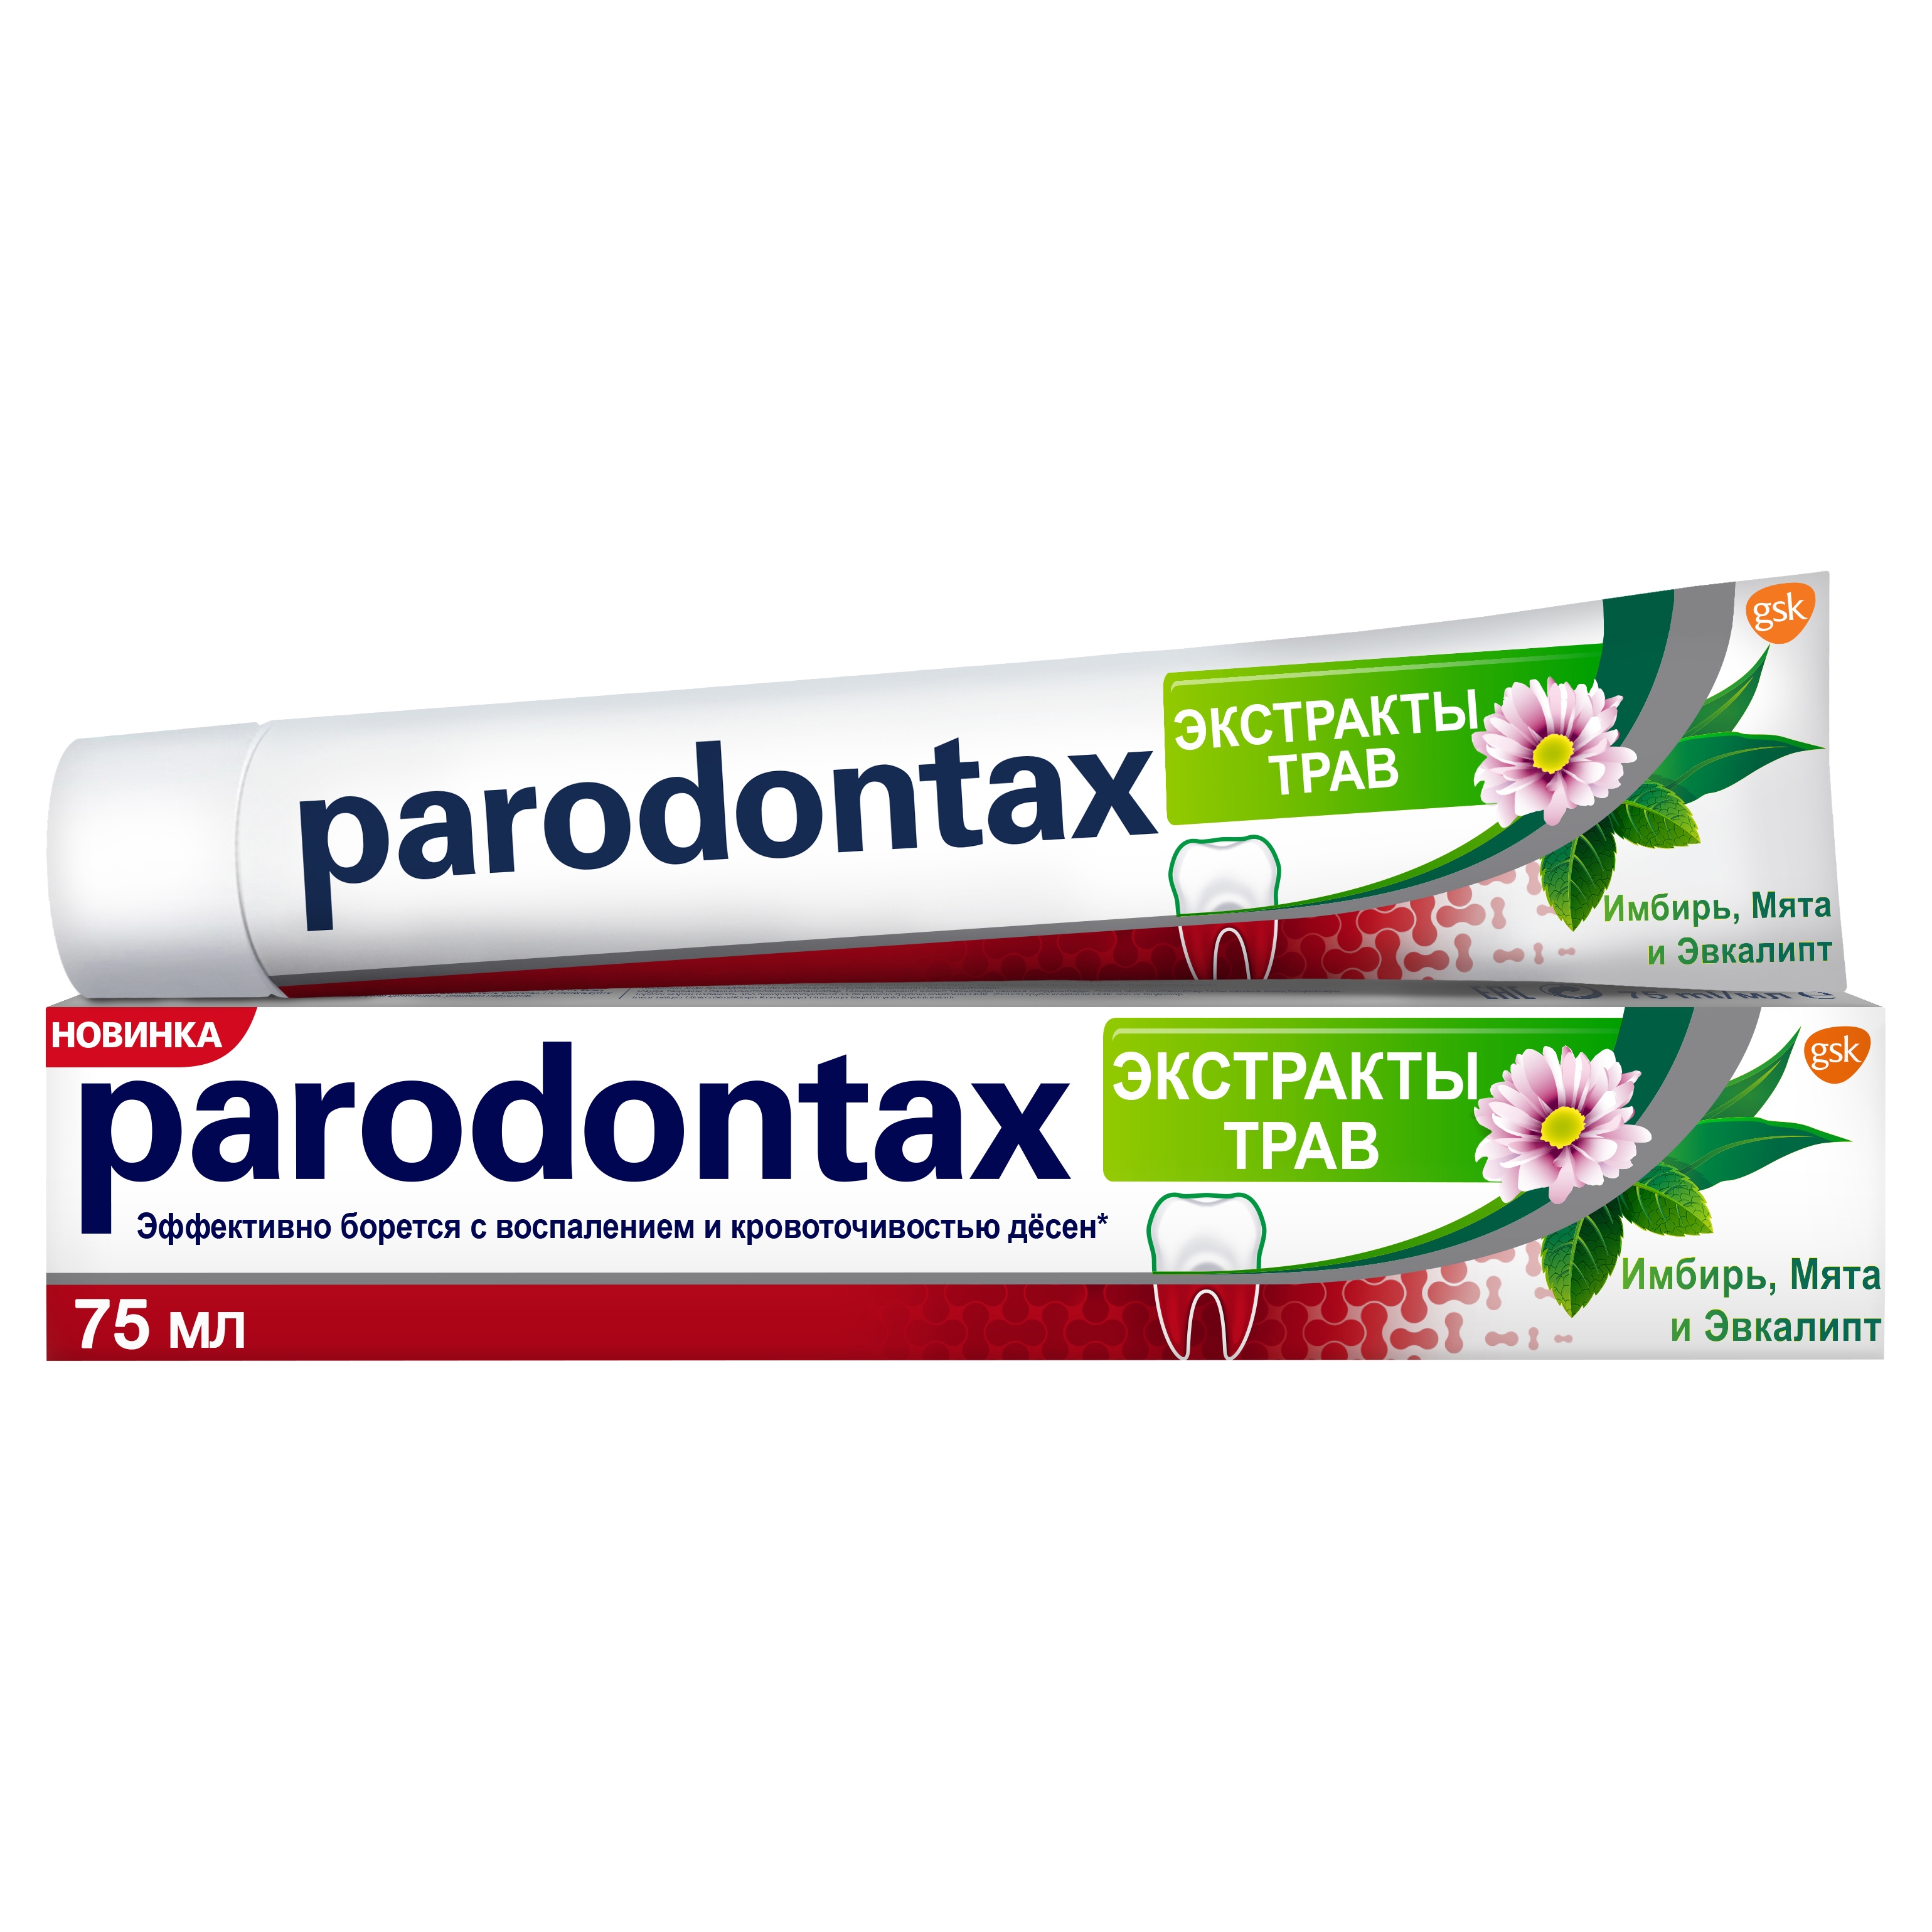 Зубная паста Parodontax Экстракты Трав 75 мл зубная паста parodontax экстракты трав от воспаления и кровоточивости десен с фтором 75 мл